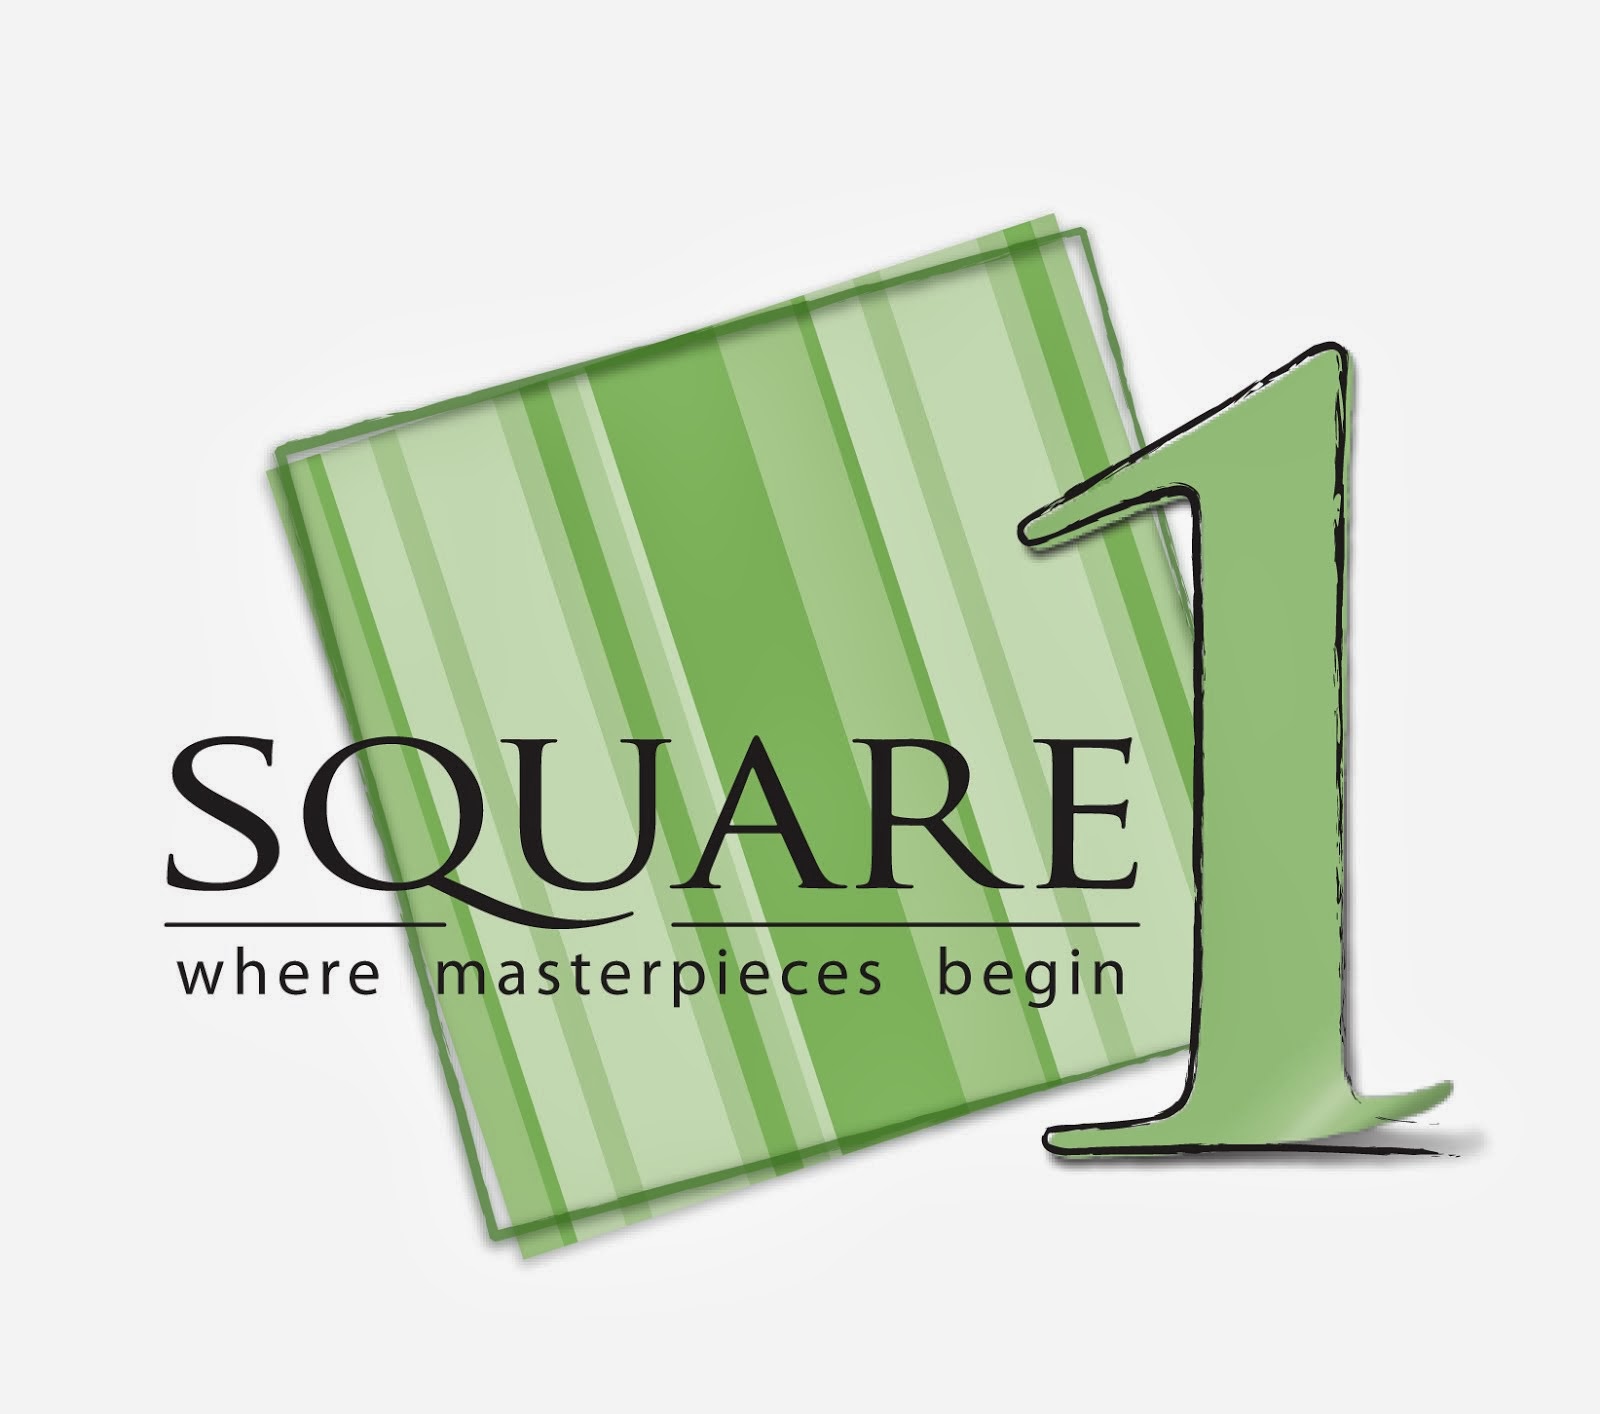 Square 1